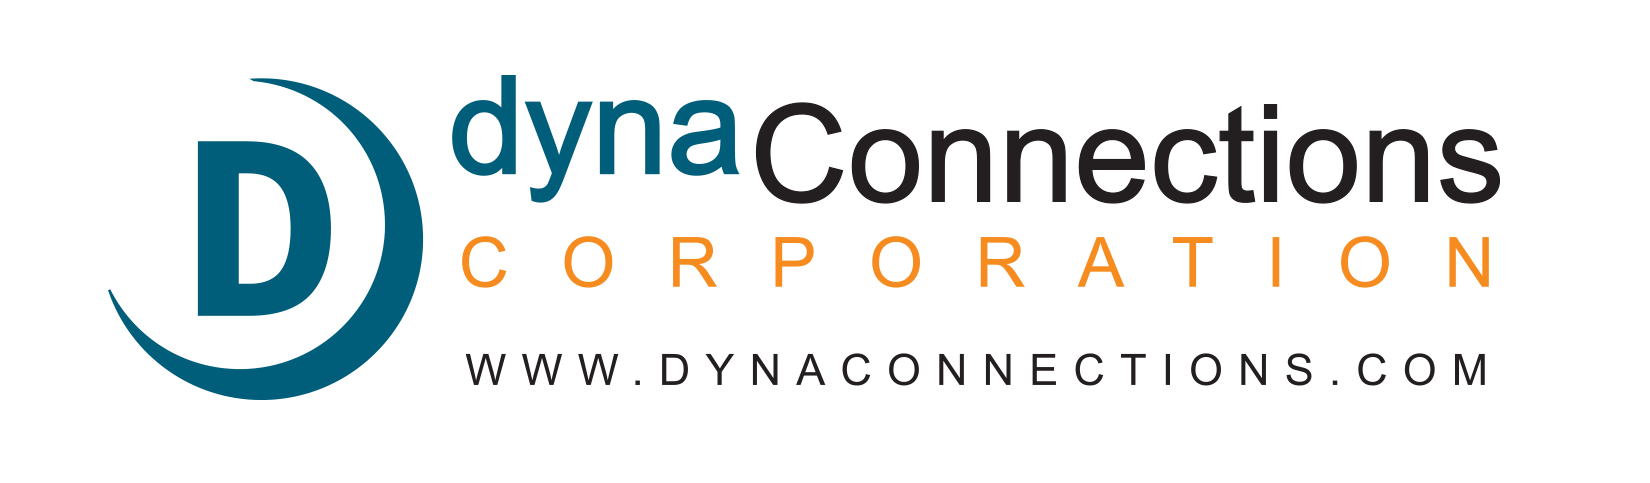 Logotipo de dynaConnections